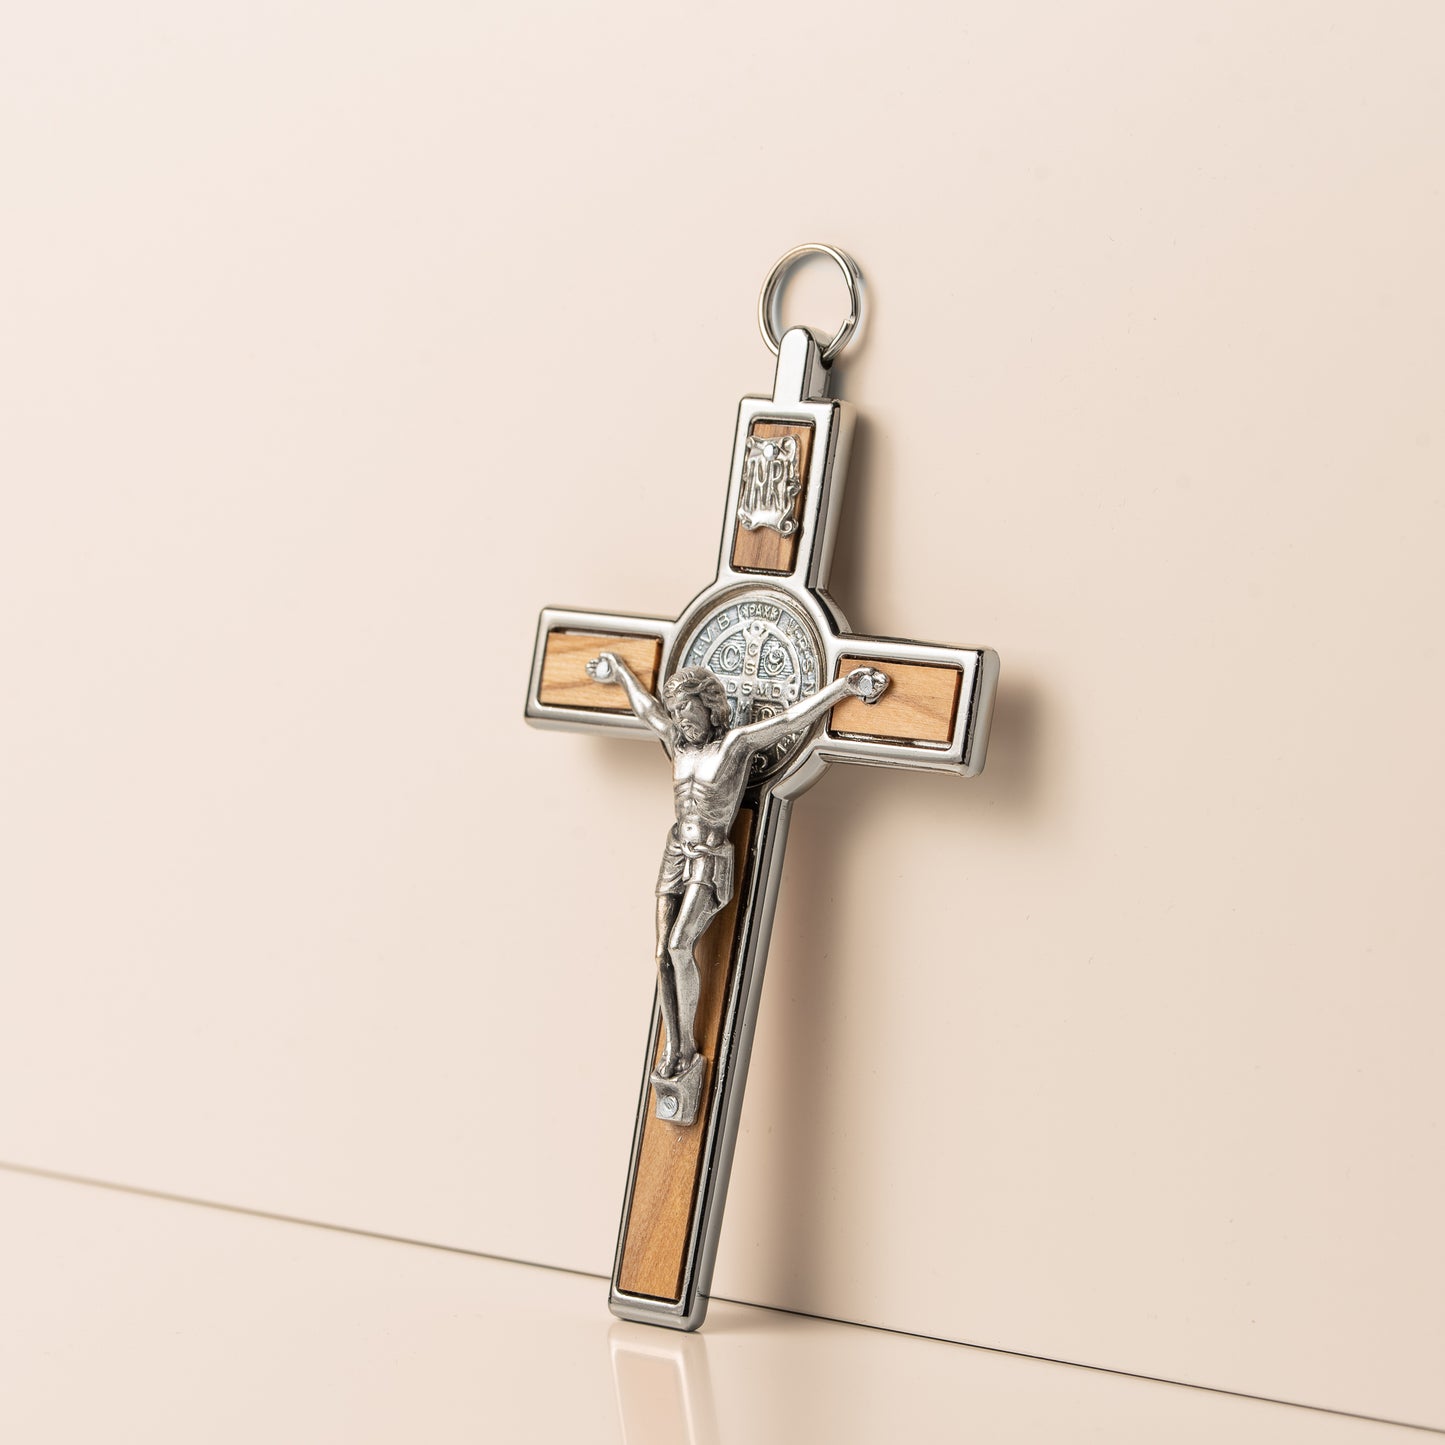 Crucifix Saint-Benoit en bois et métal